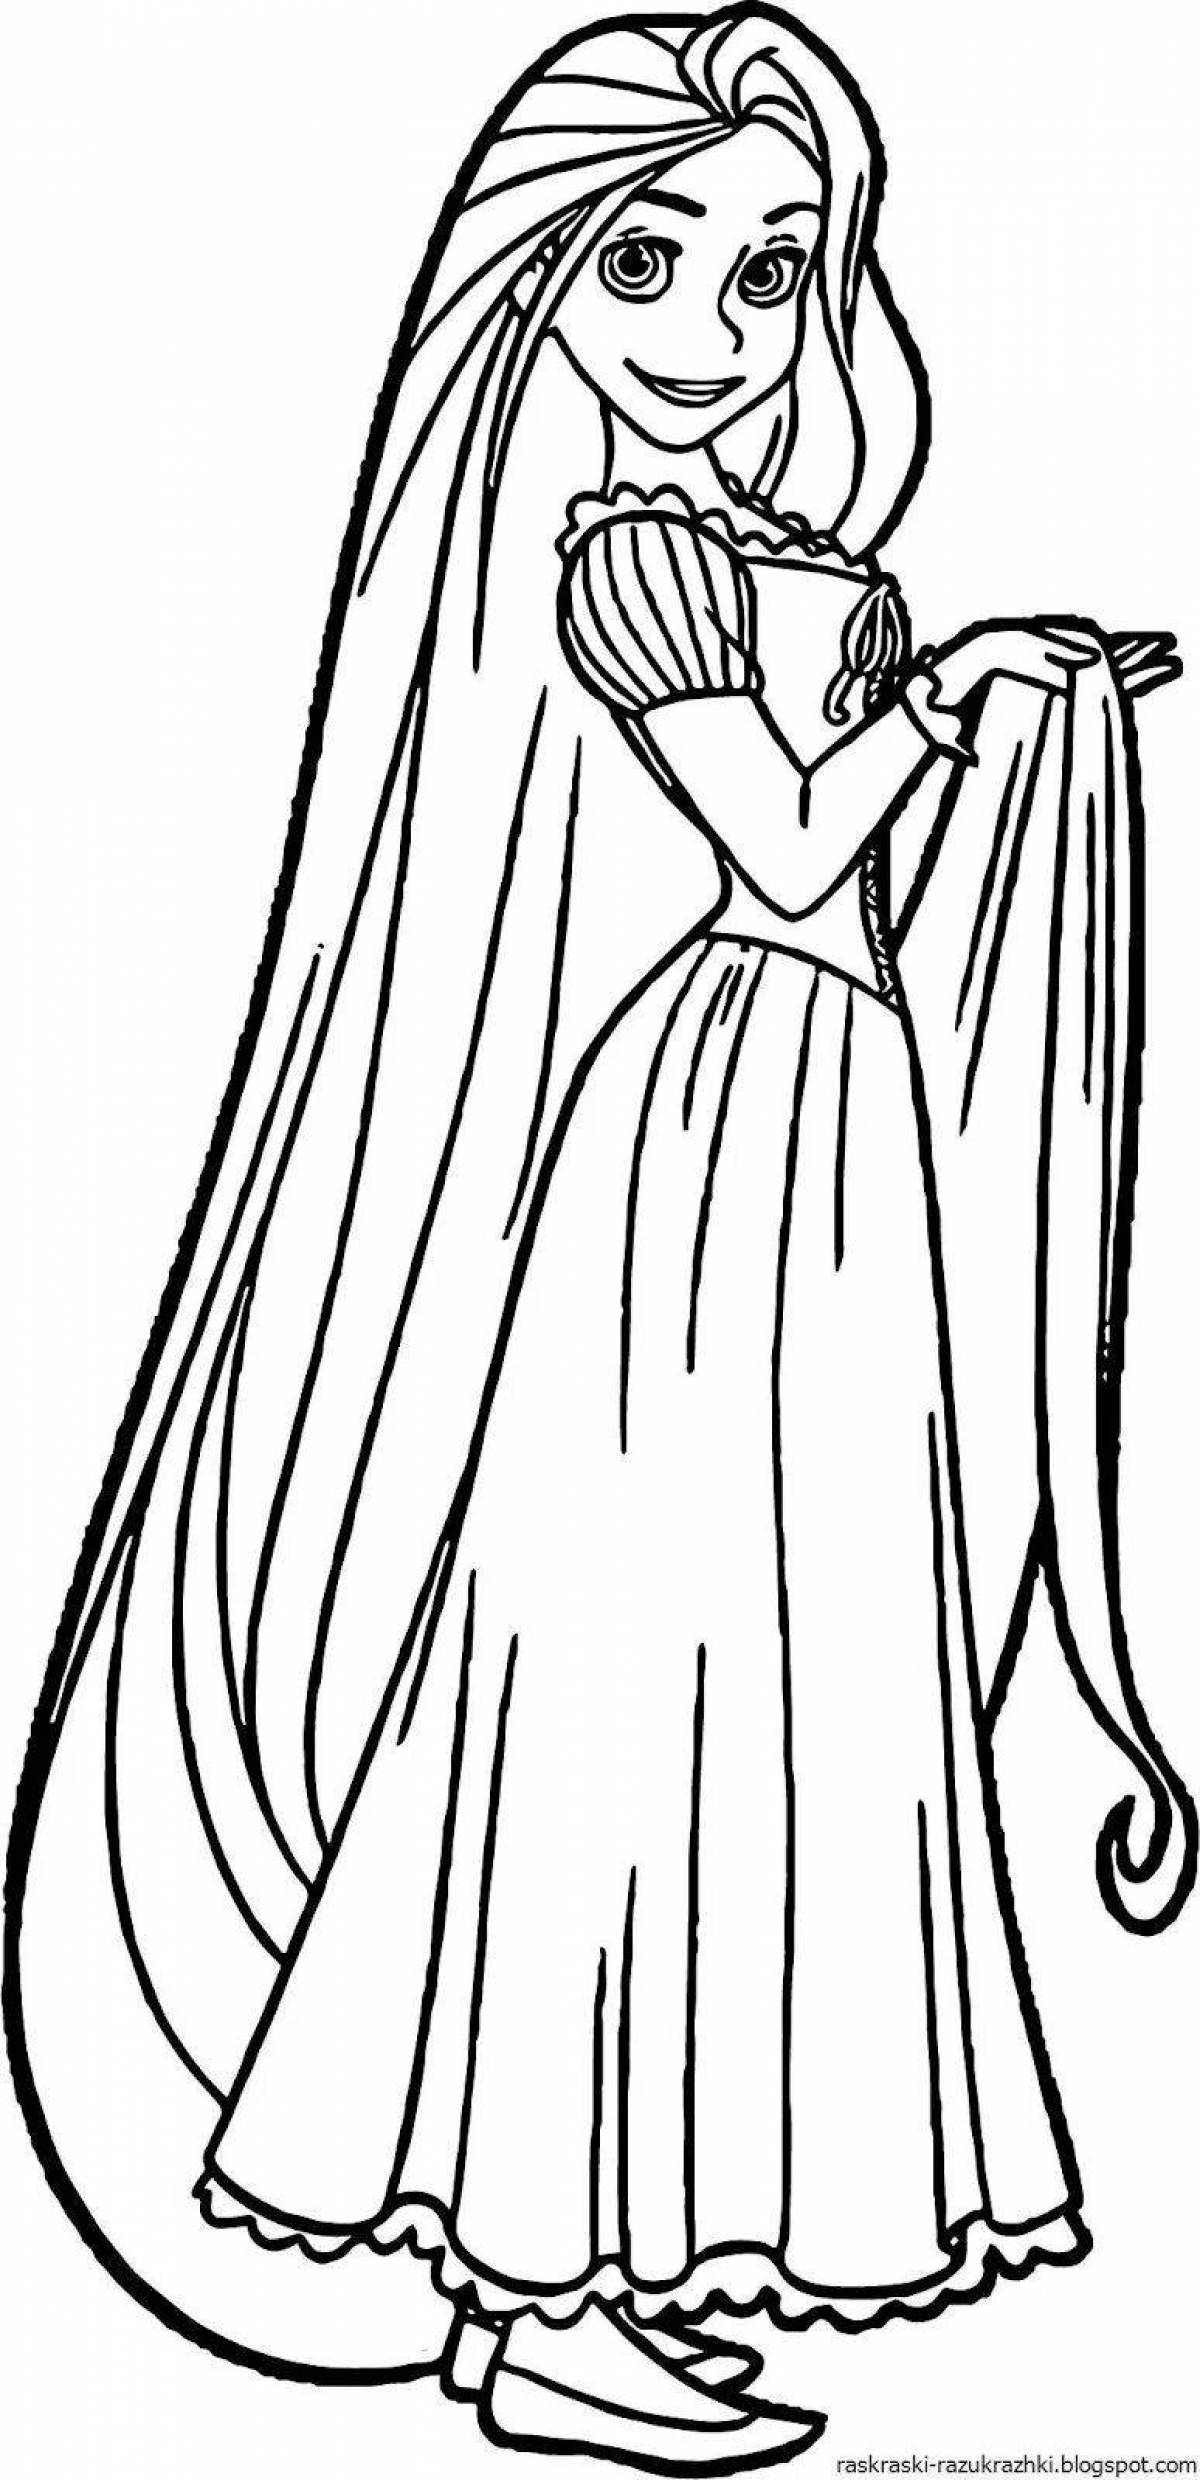 Раскраска безупречная принцесса с длинными волосами